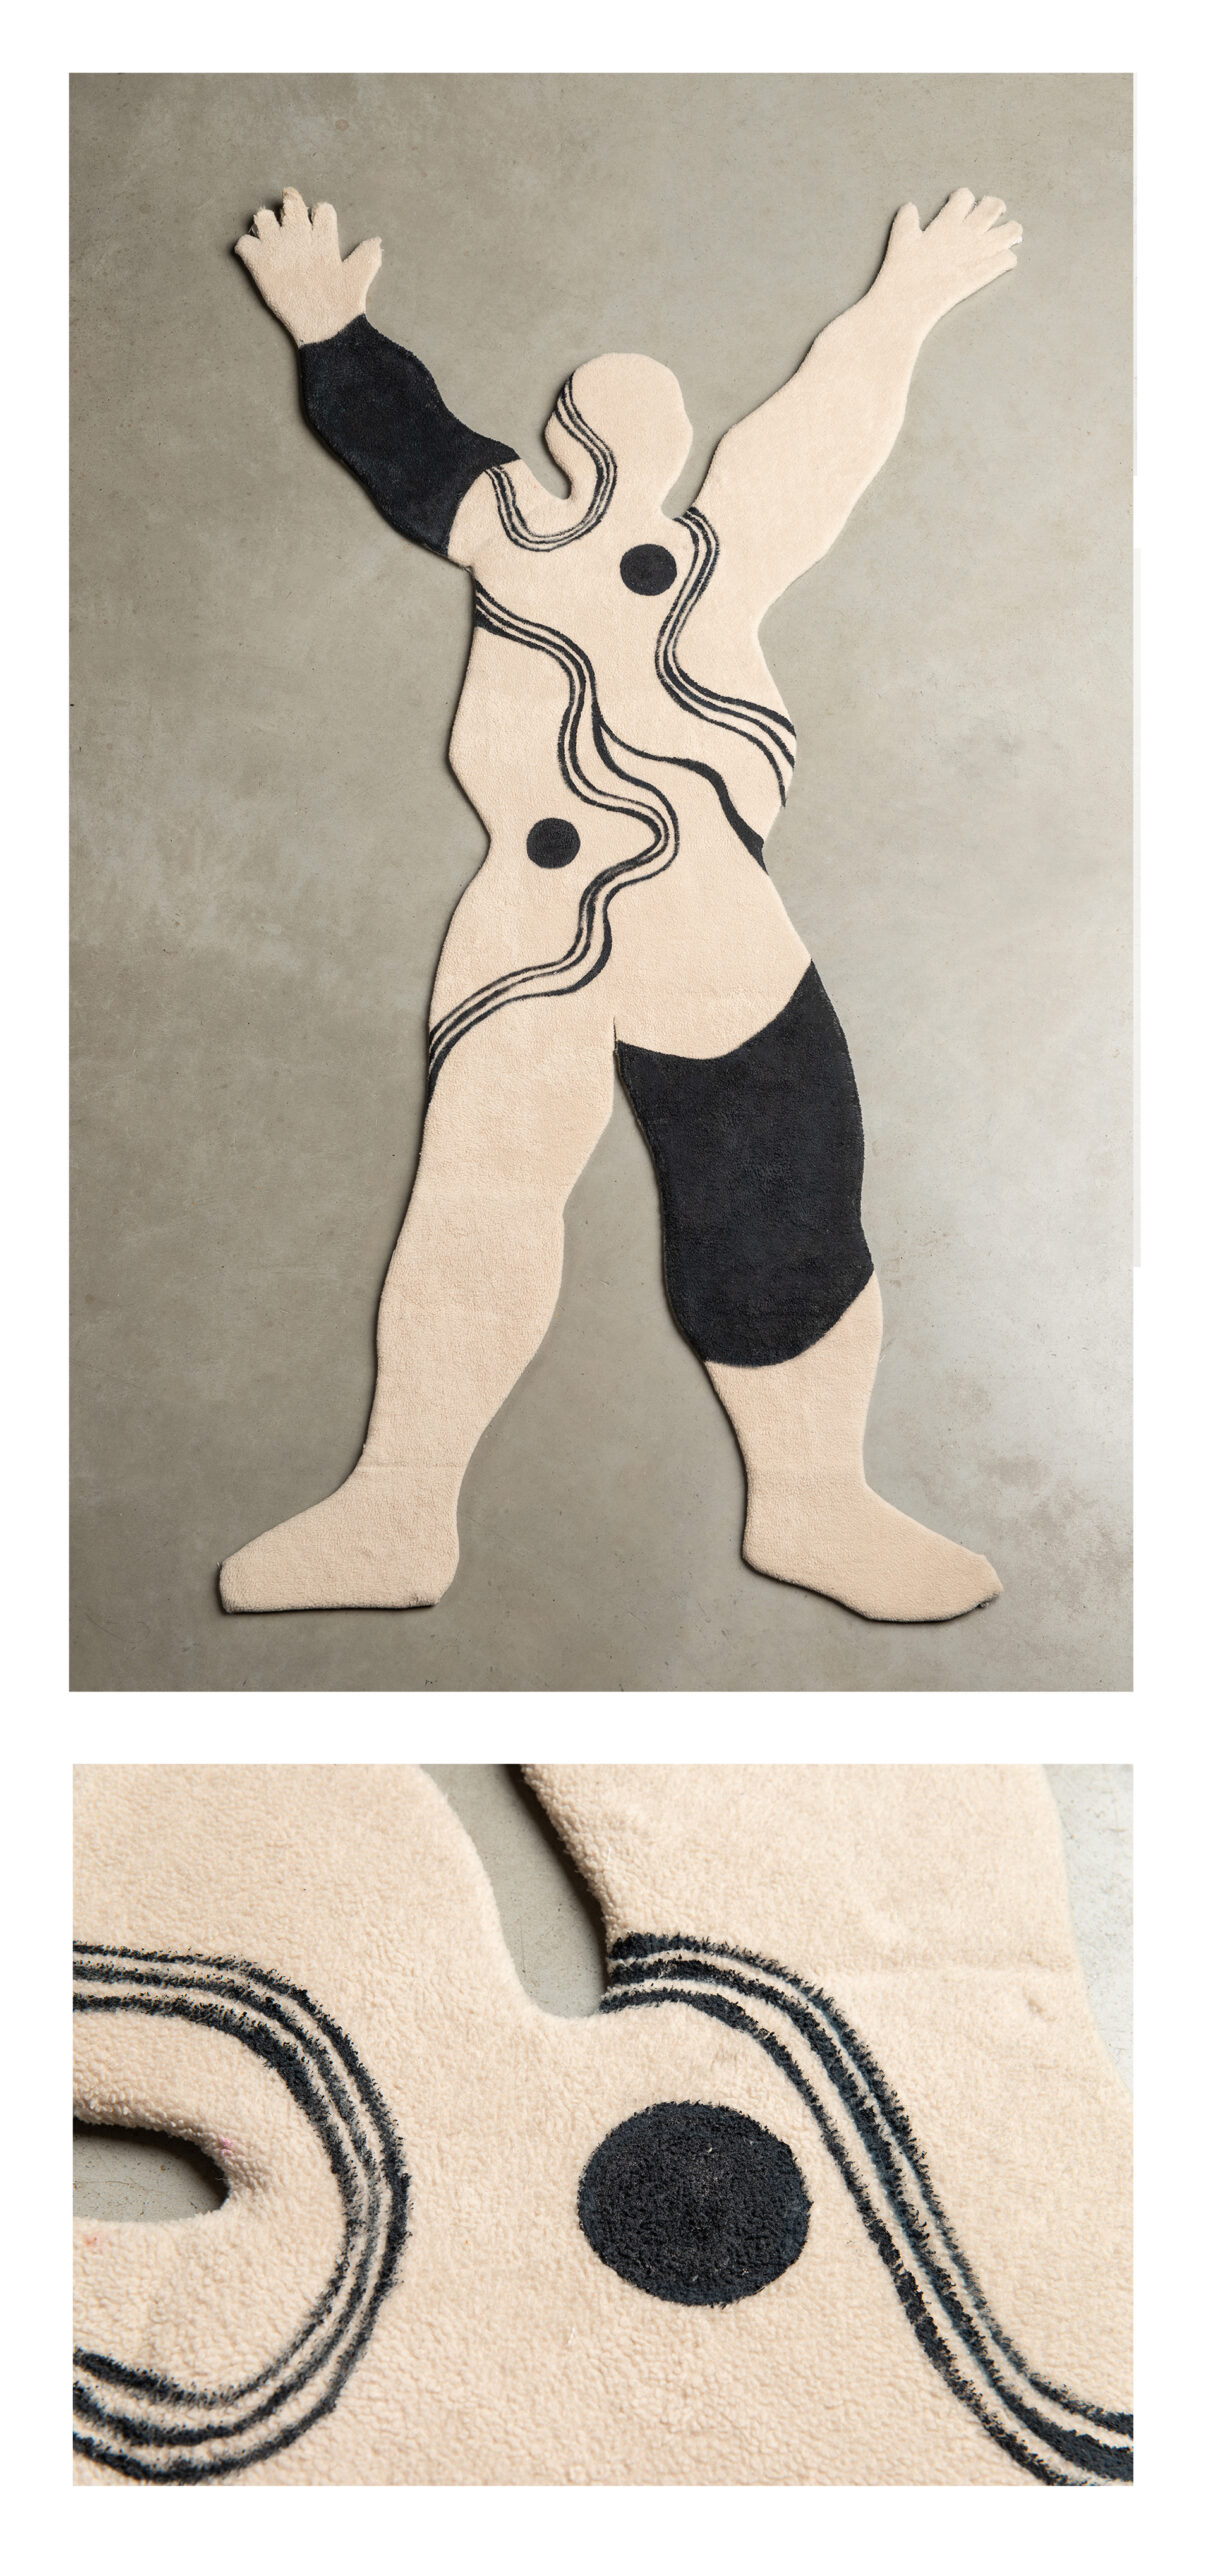 :Obiekt przedstawia człowieka z abstrakcyjnymi wzorami na ciele